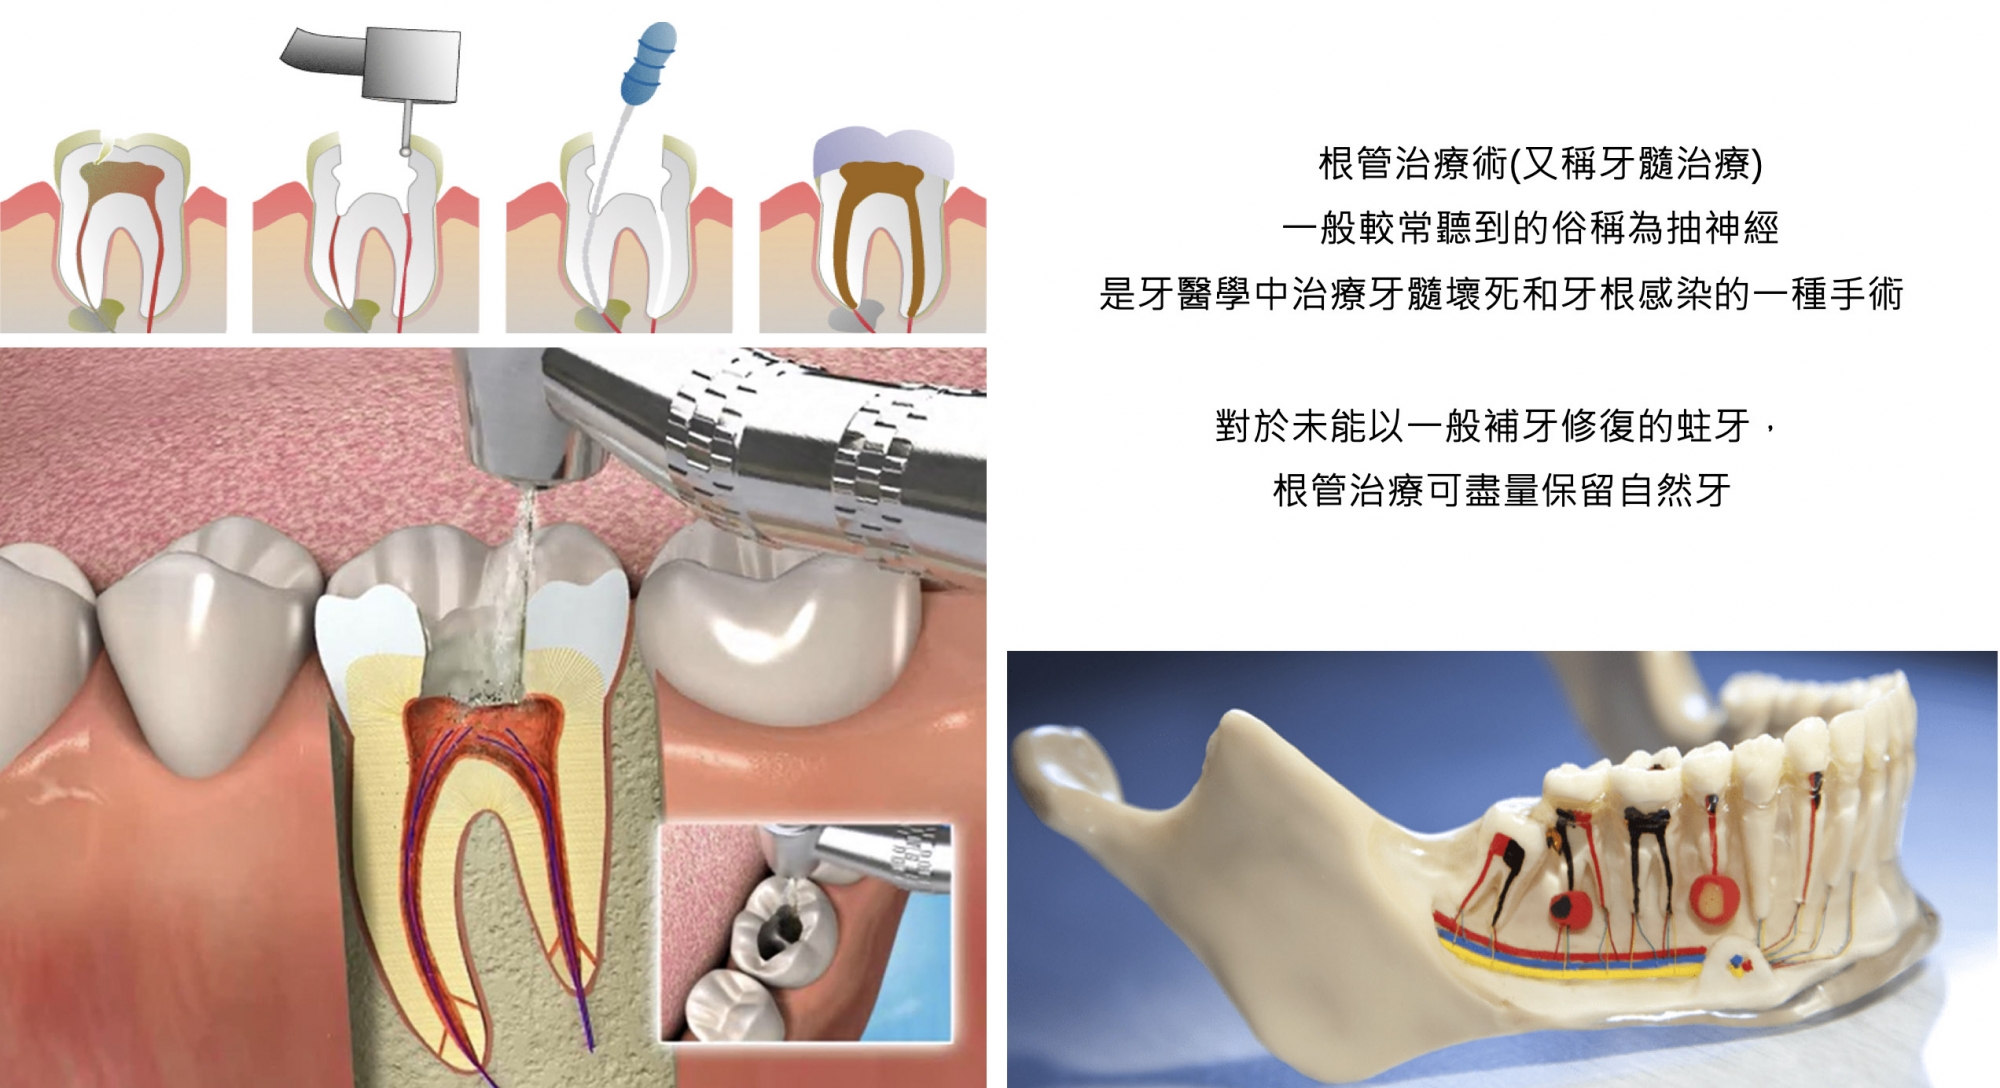 江苏省口腔医院—诊牙日记（根管治疗、补牙、拔牙、种牙 持续更新……） - 知乎